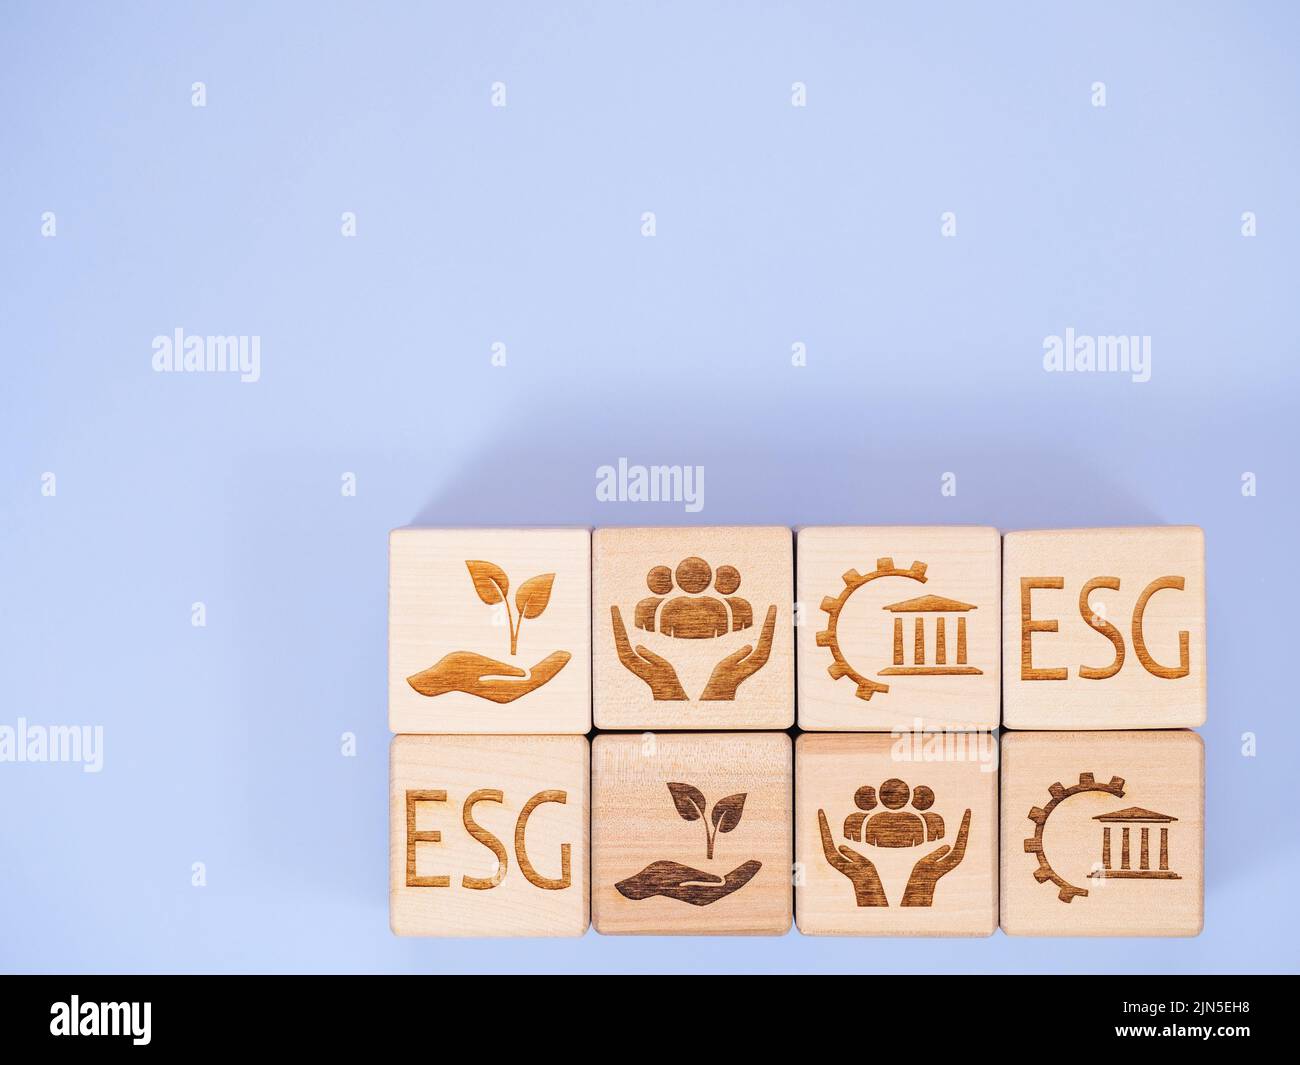 Texto ESG y símbolos en cubos de madera como concepto de conservación ambiental Foto de stock